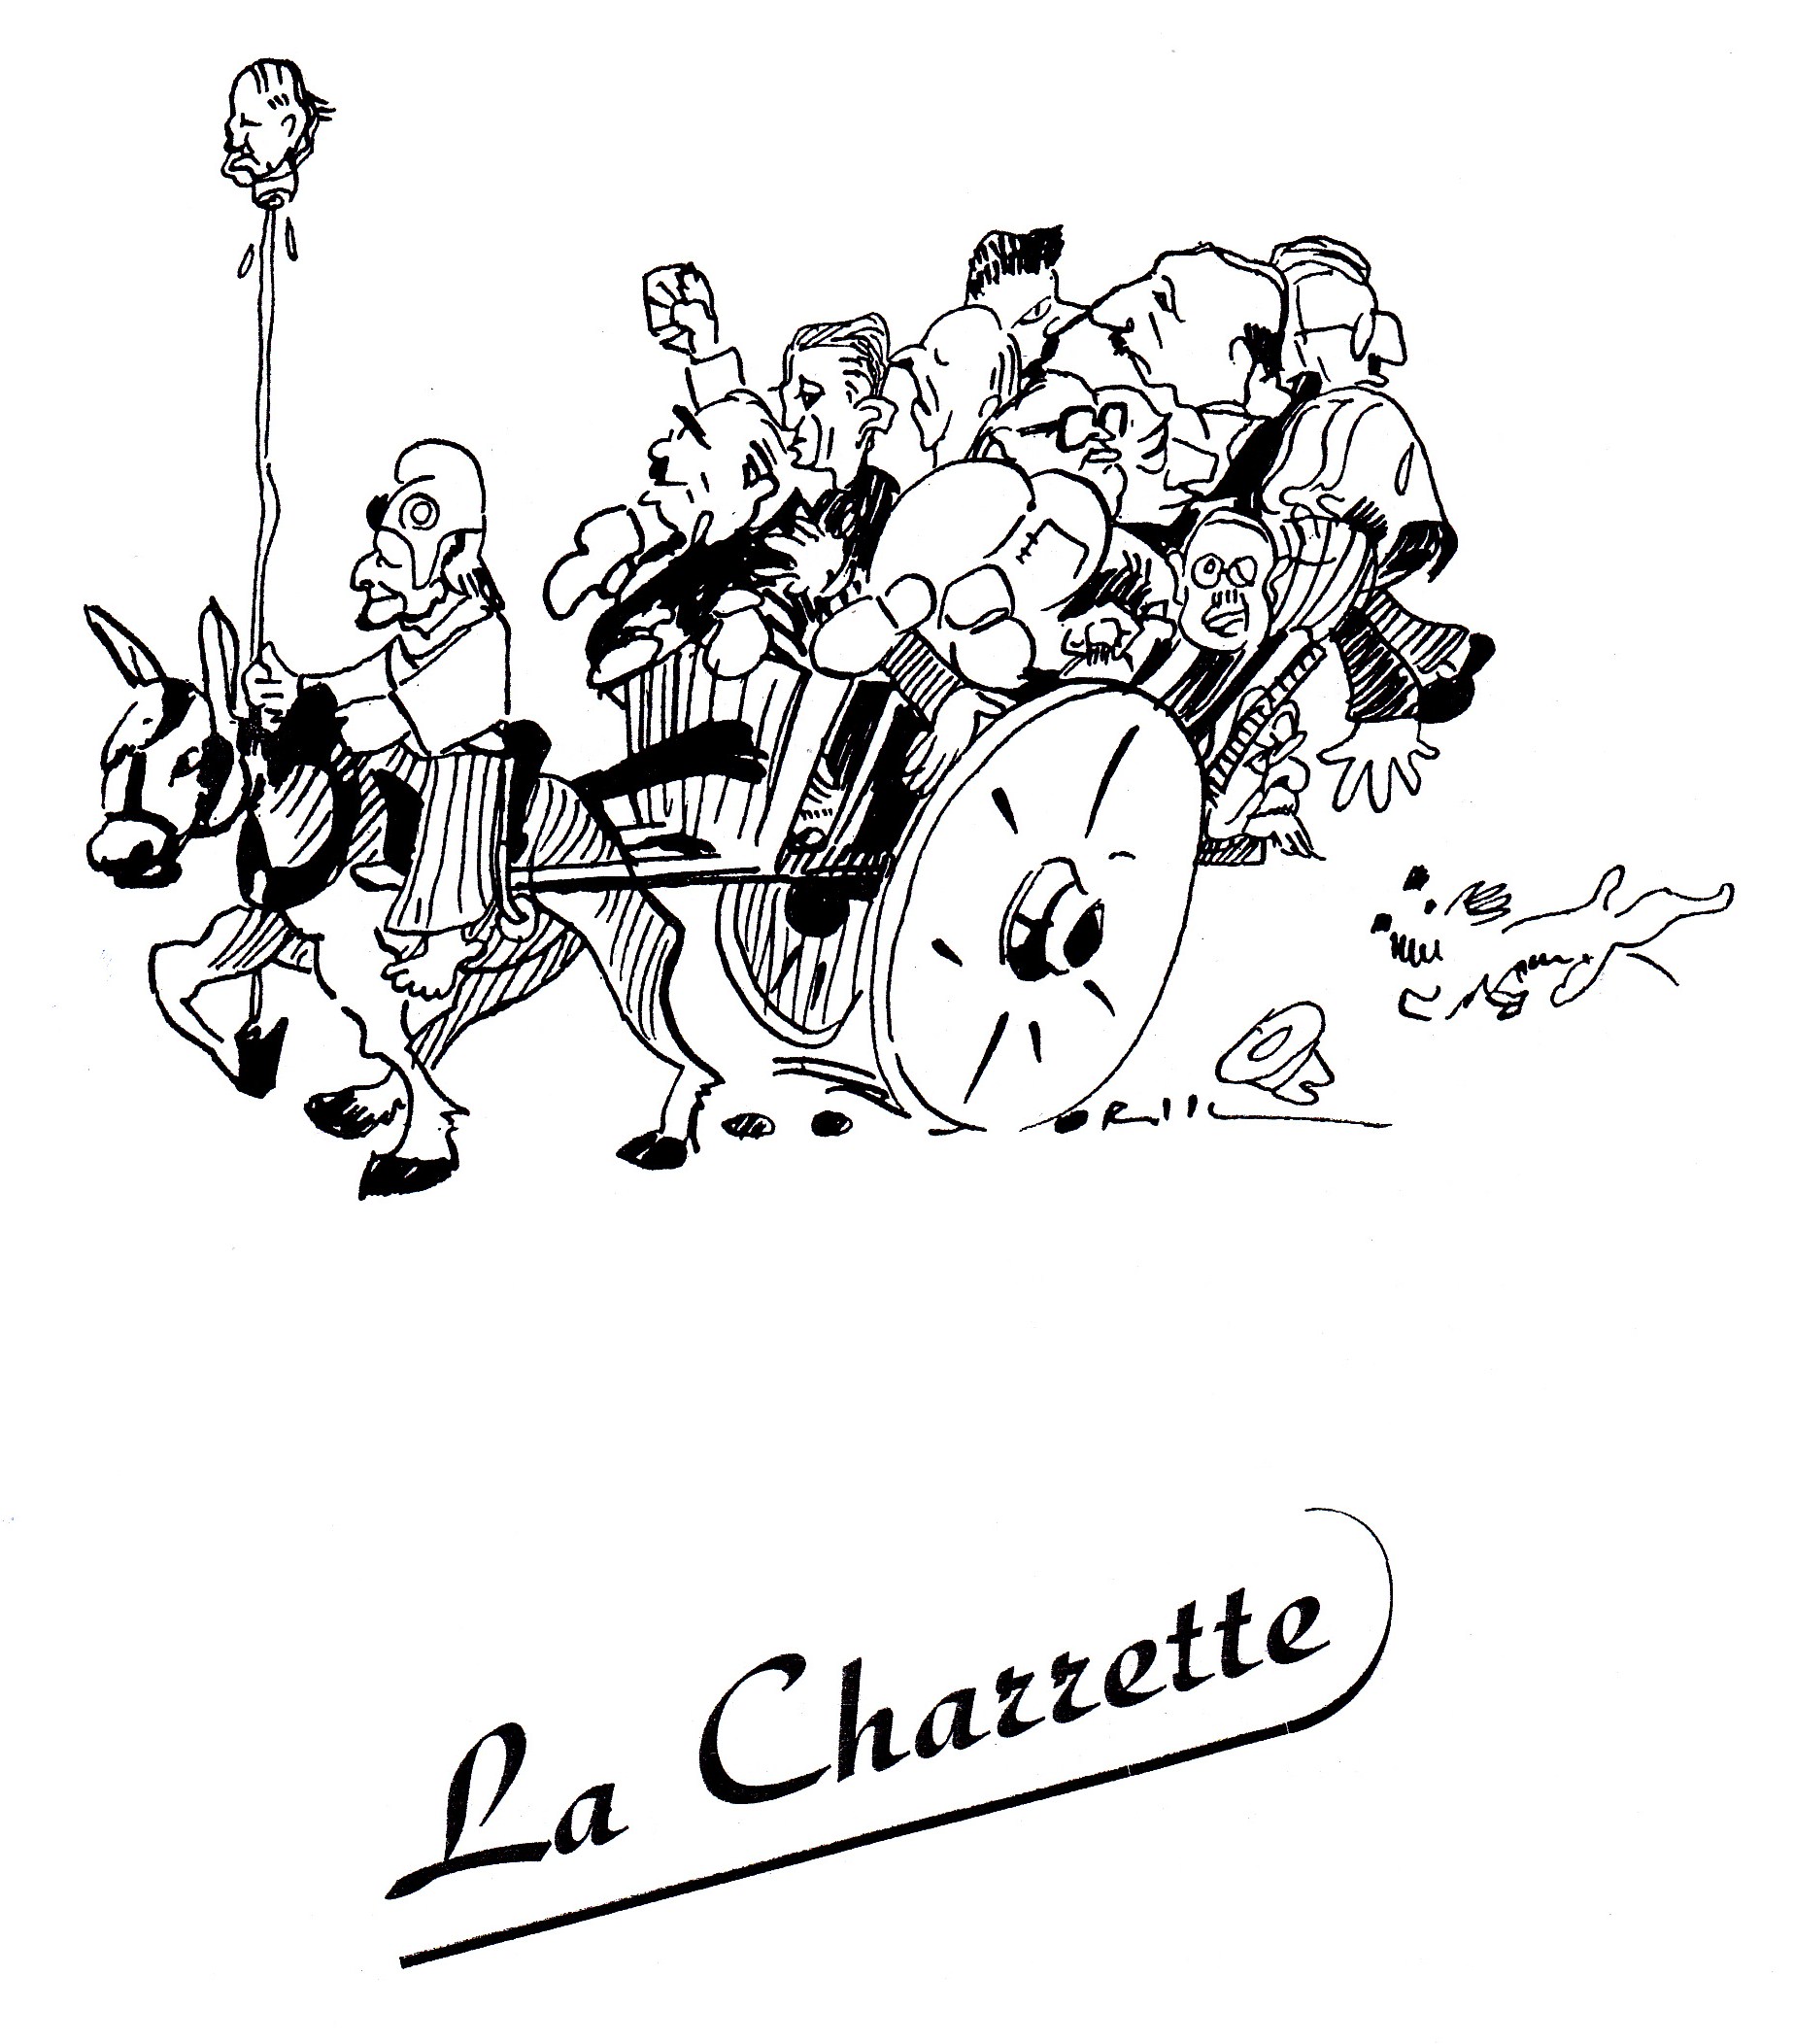 La Charrette par Reeb 1949